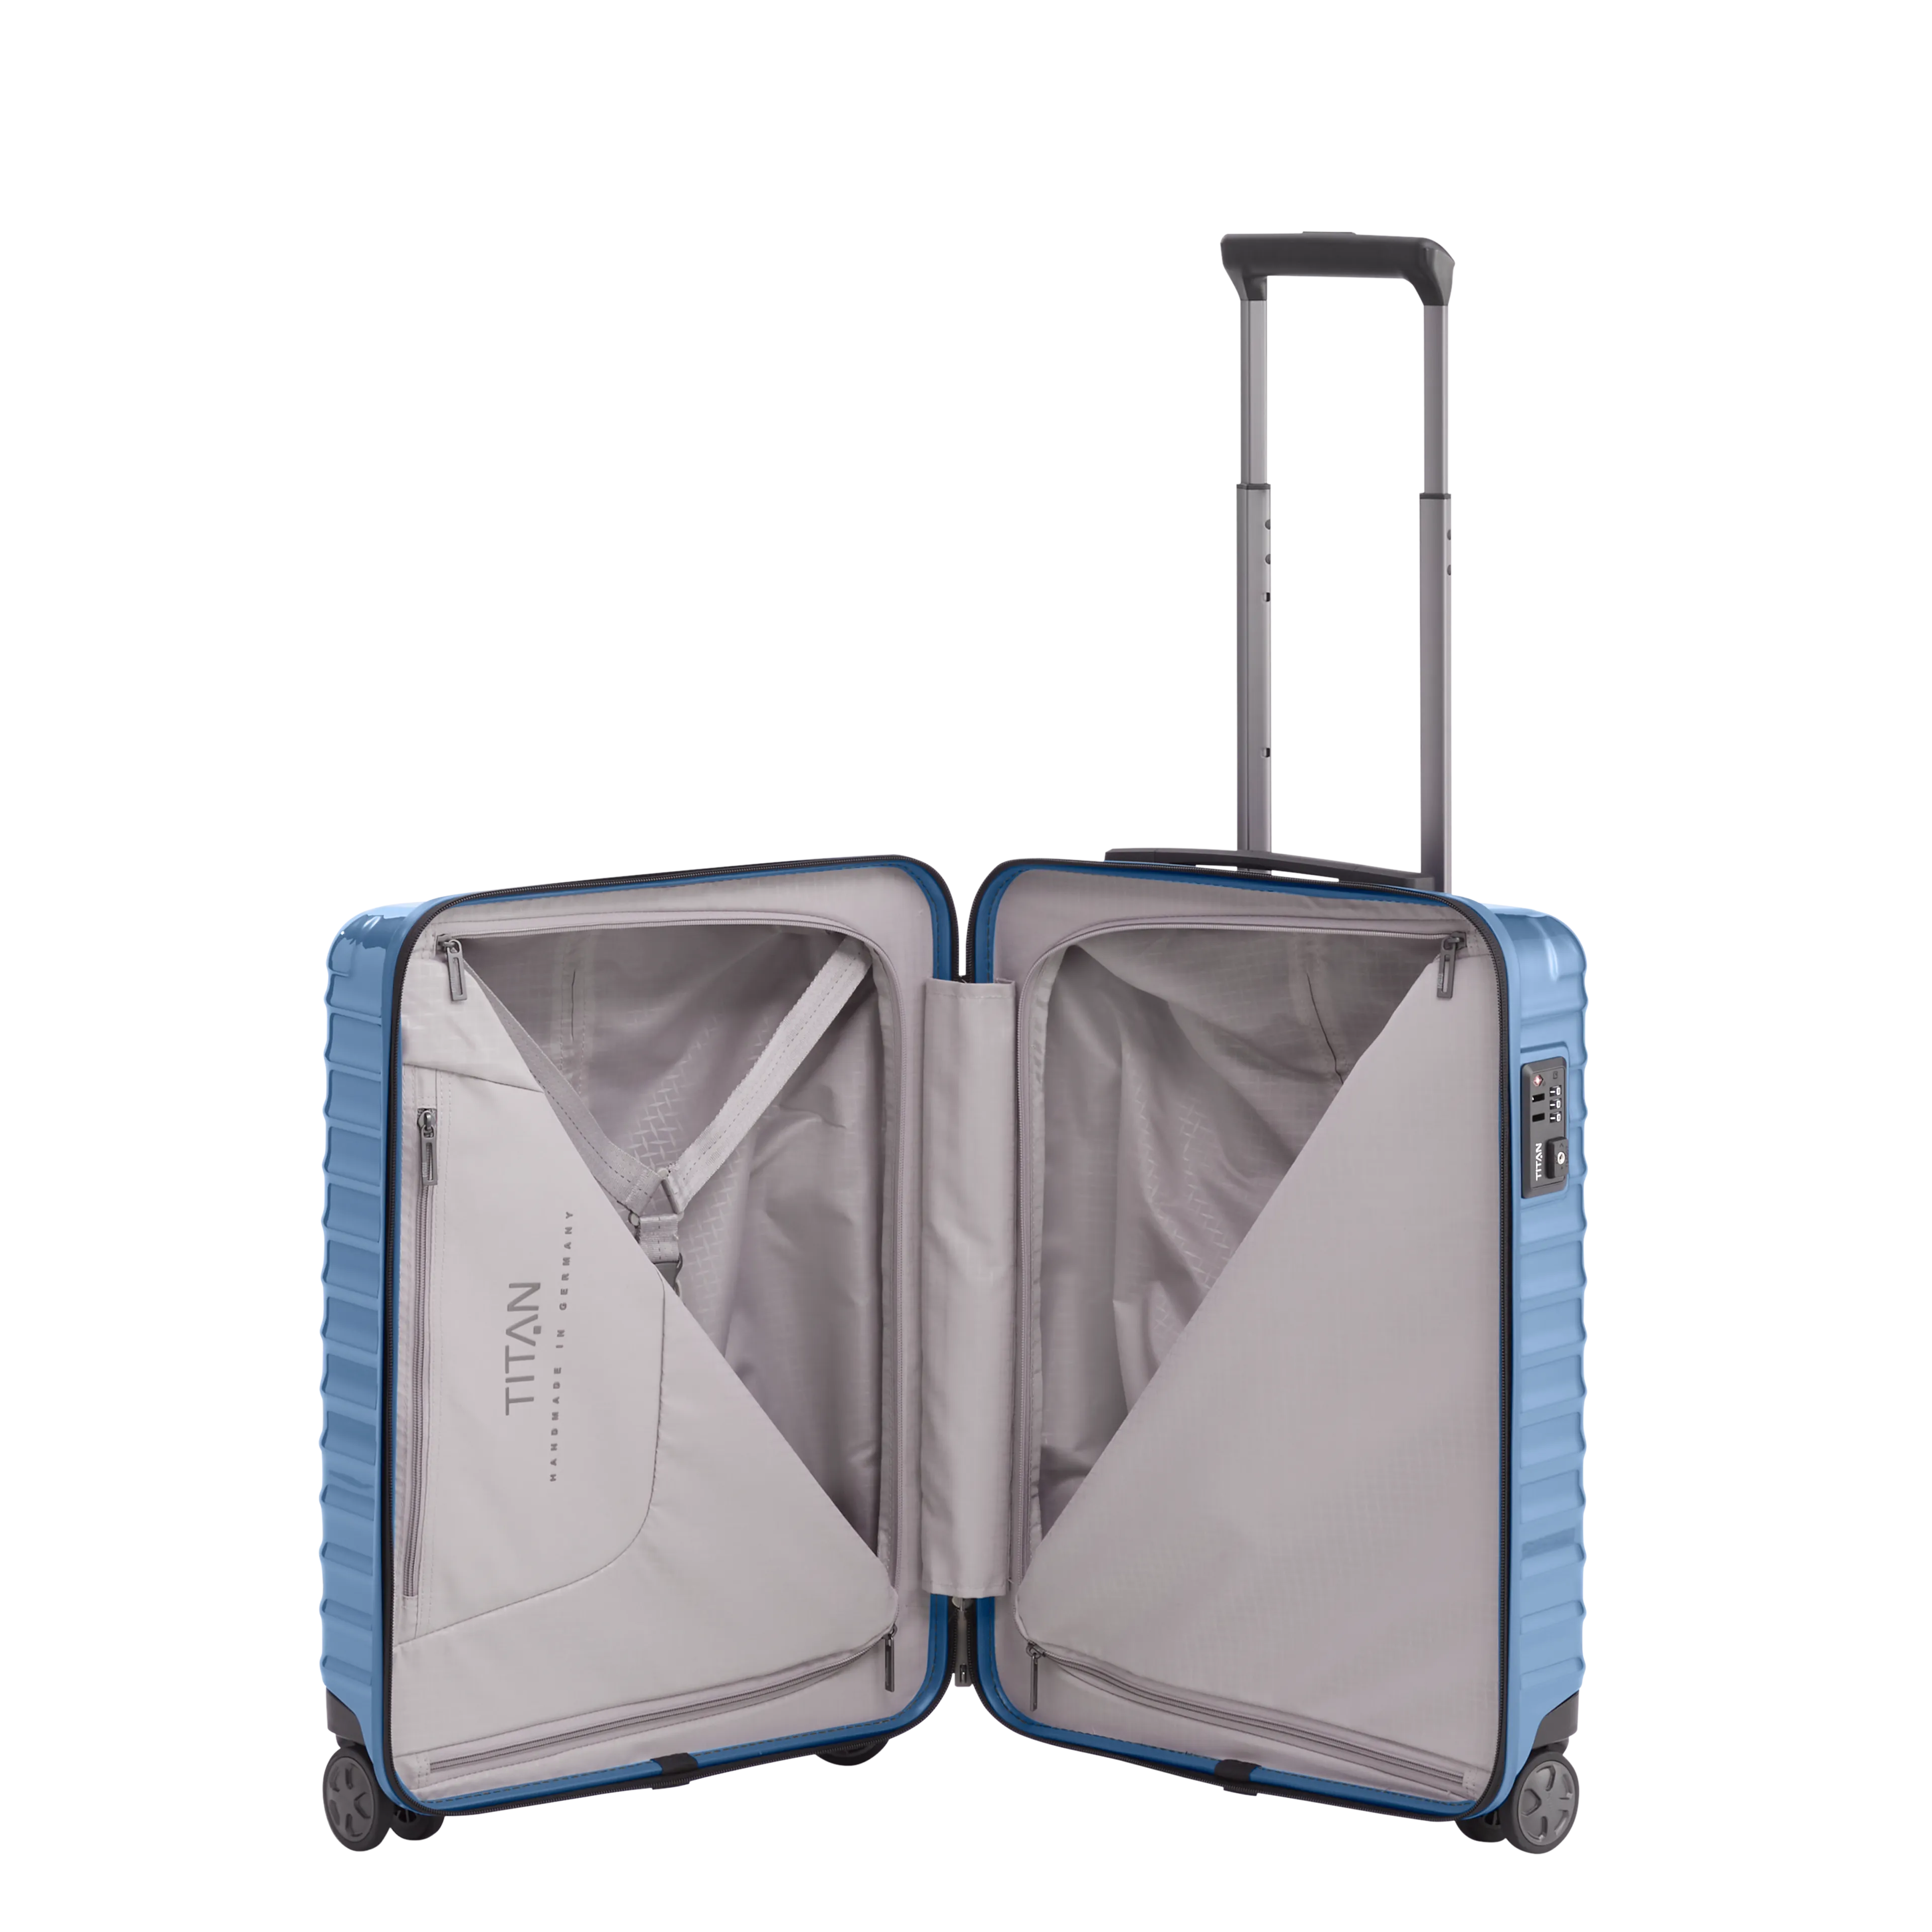 Ein TITAN Koffer der Serie LITRON Innenansicht in eisblau Größe S 55cm